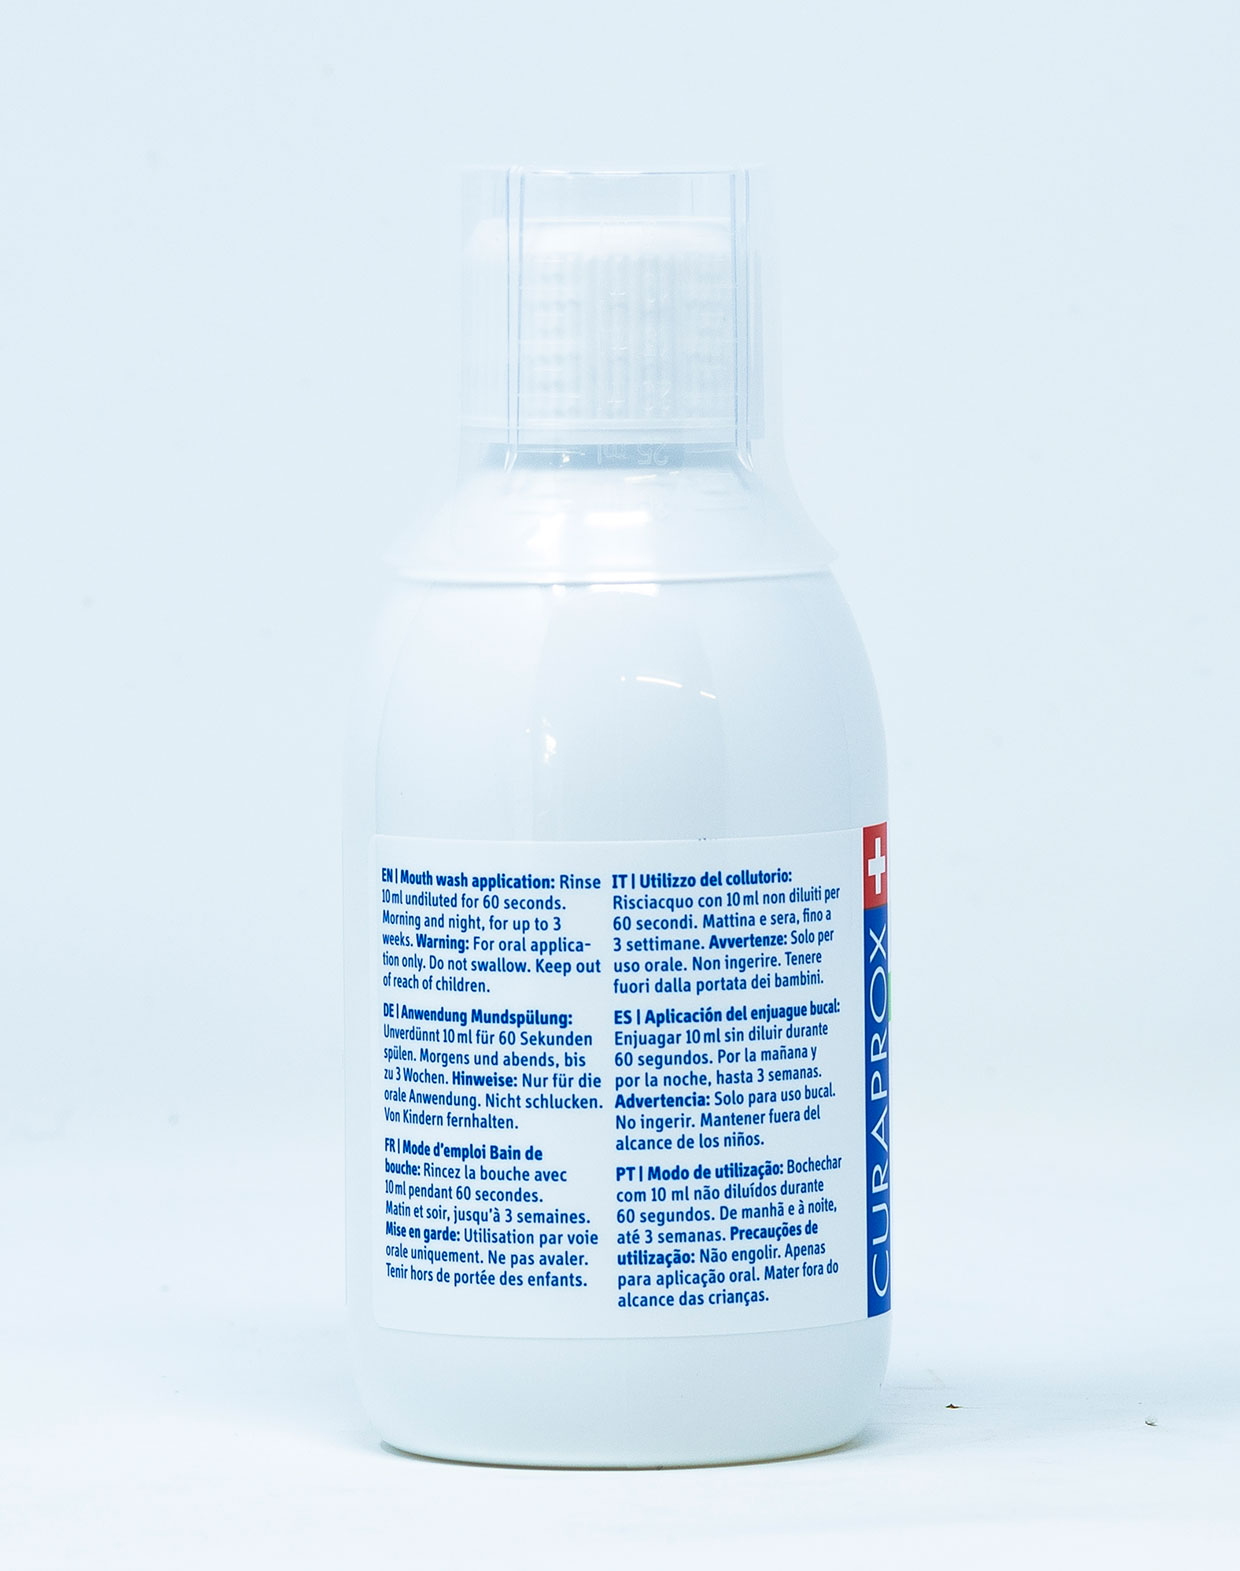 Curaprox Collutorio Perio Plus+ Protect CHX 0,12% - 200 ml